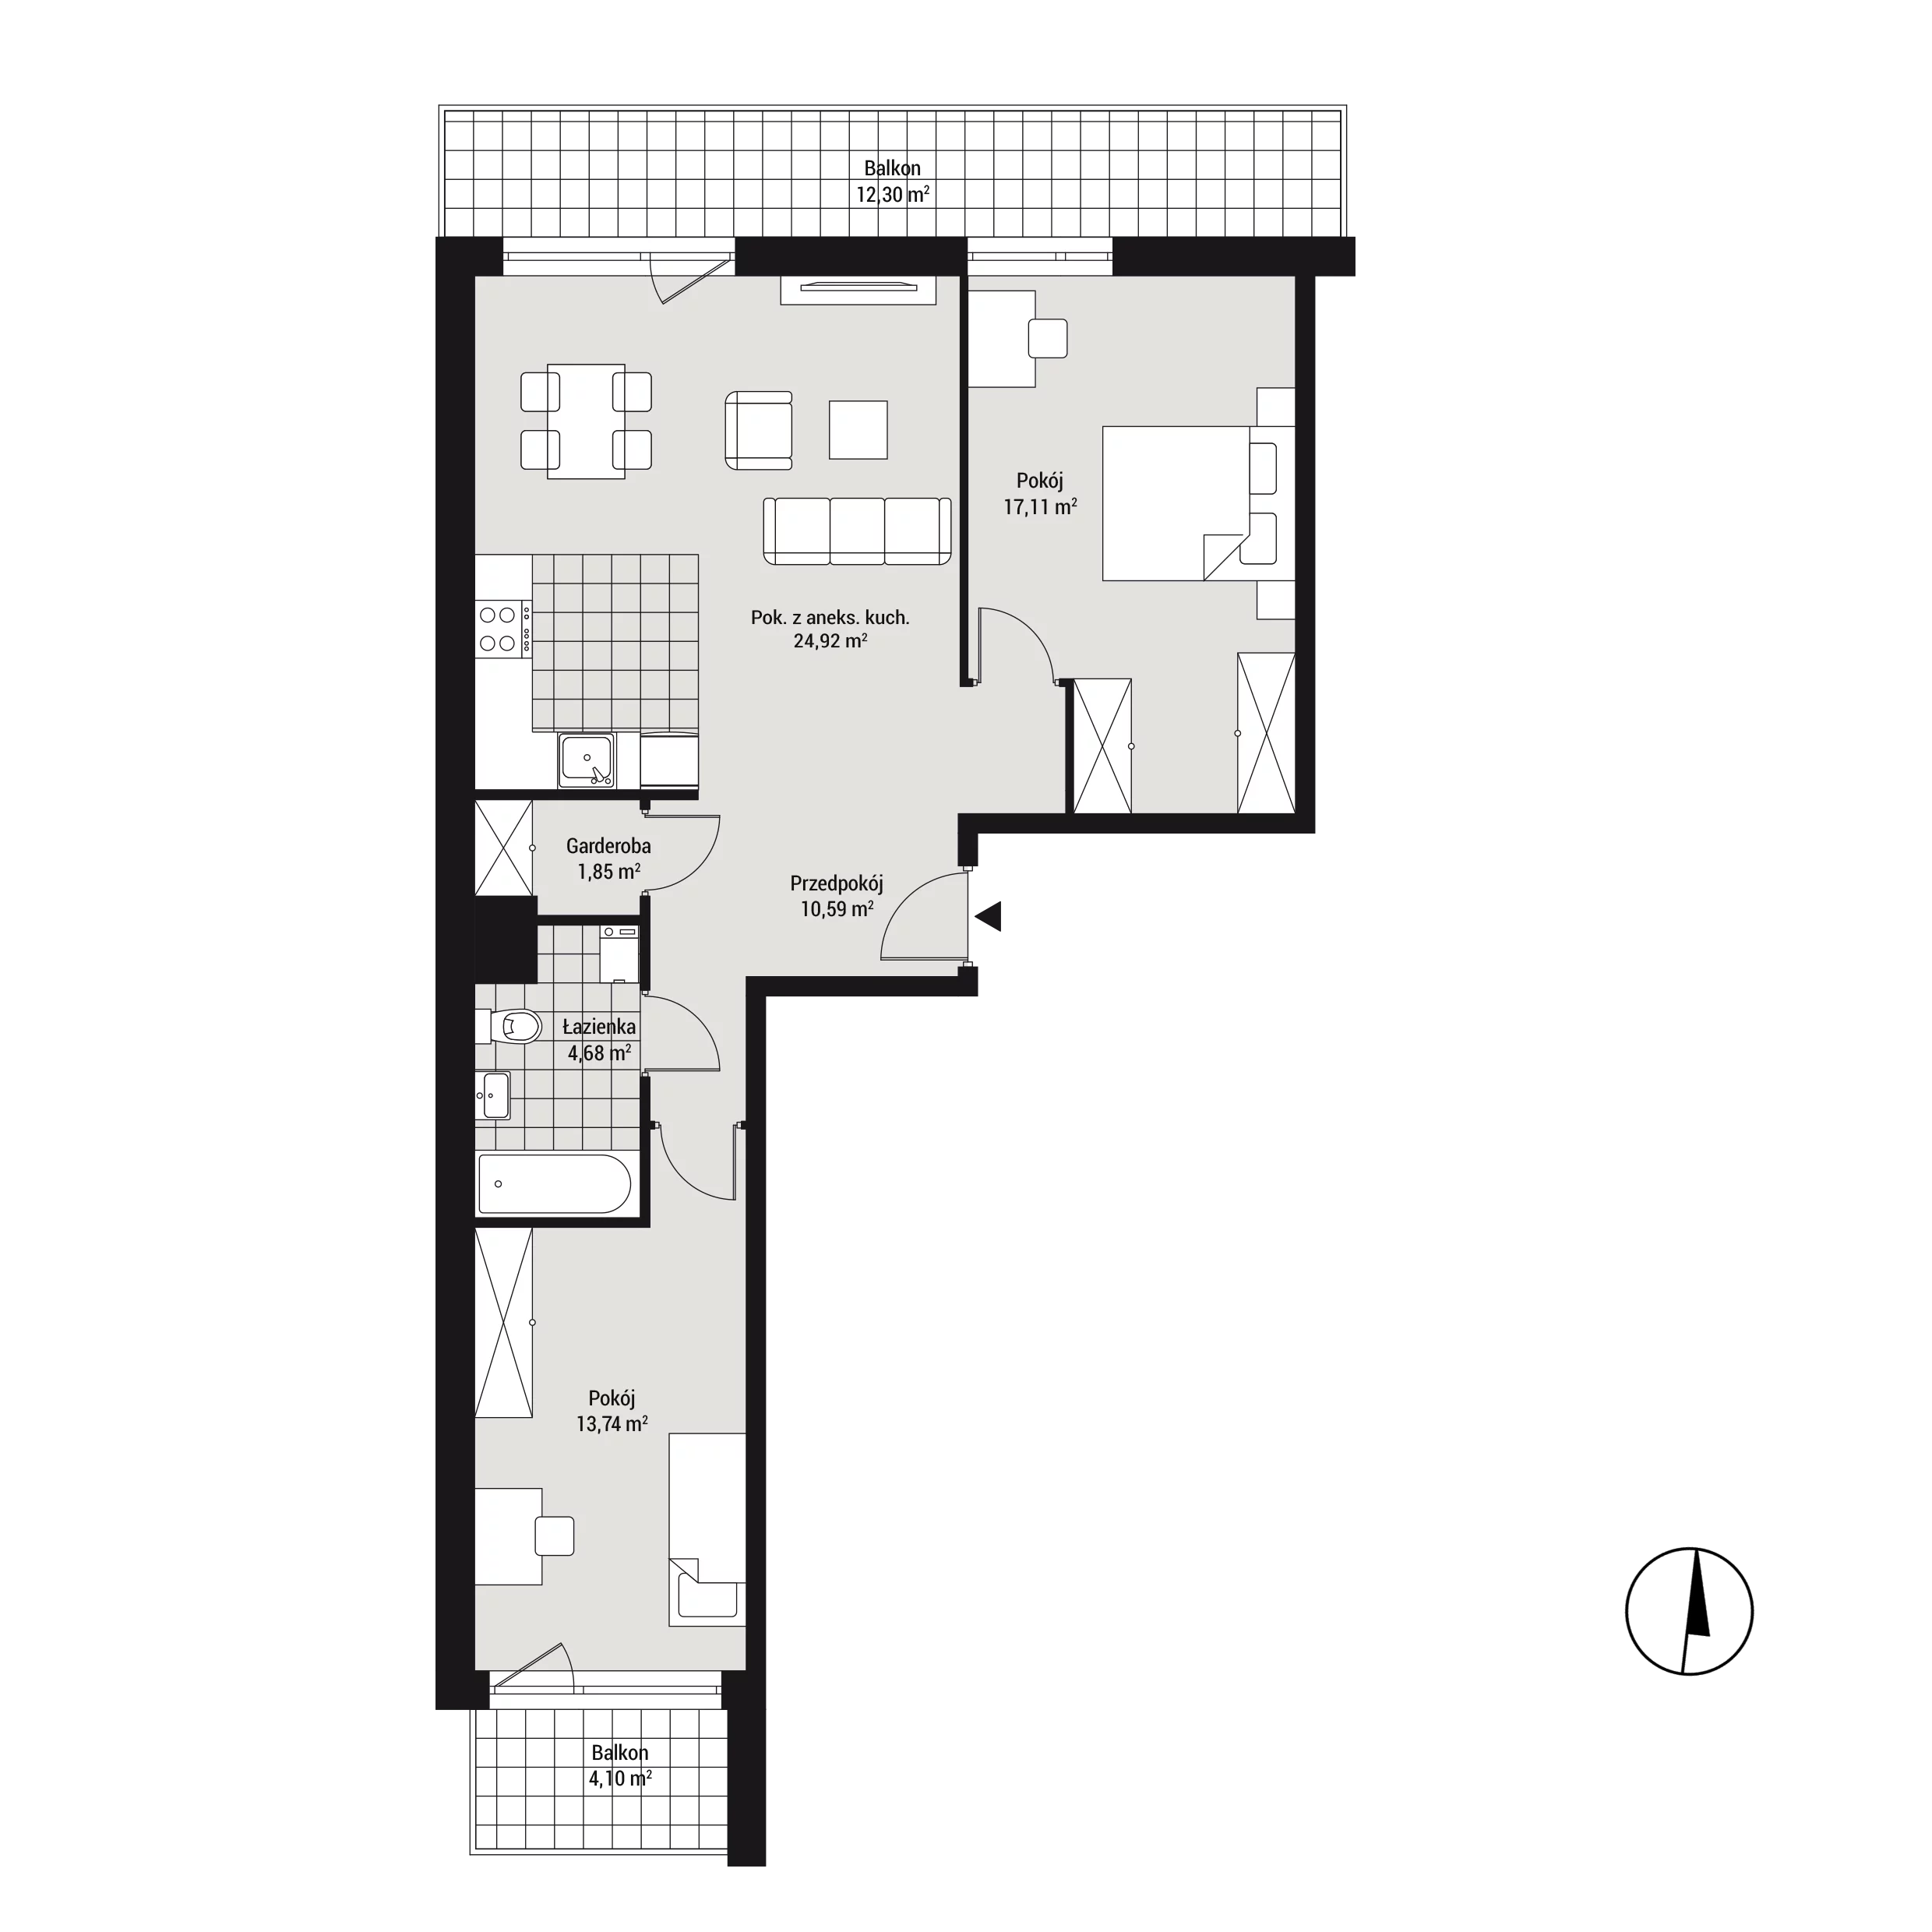 Mieszkanie 72,94 m², piętro 2, oferta nr mieszkanie A24, Na Koszutce, Katowice, Śródmieście, Koszutka, ul. Słoneczna 1